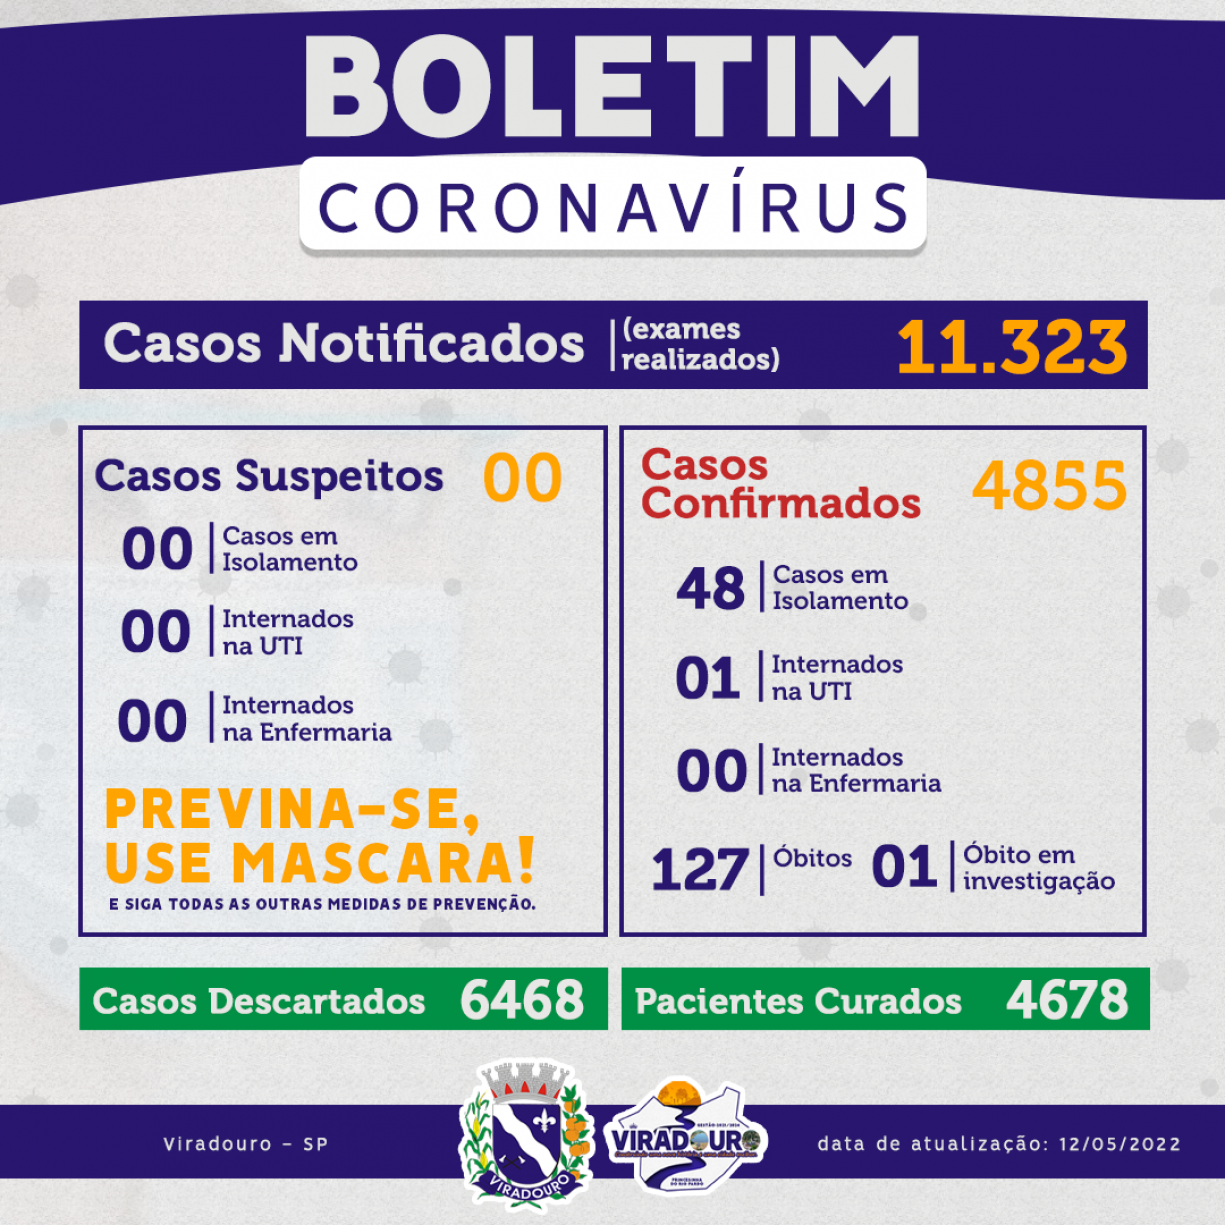 CORONAVÍRUS: BOLETIM EPIDEMIOLÓGICO (ATUALIZAÇÃO 12/05/2022)